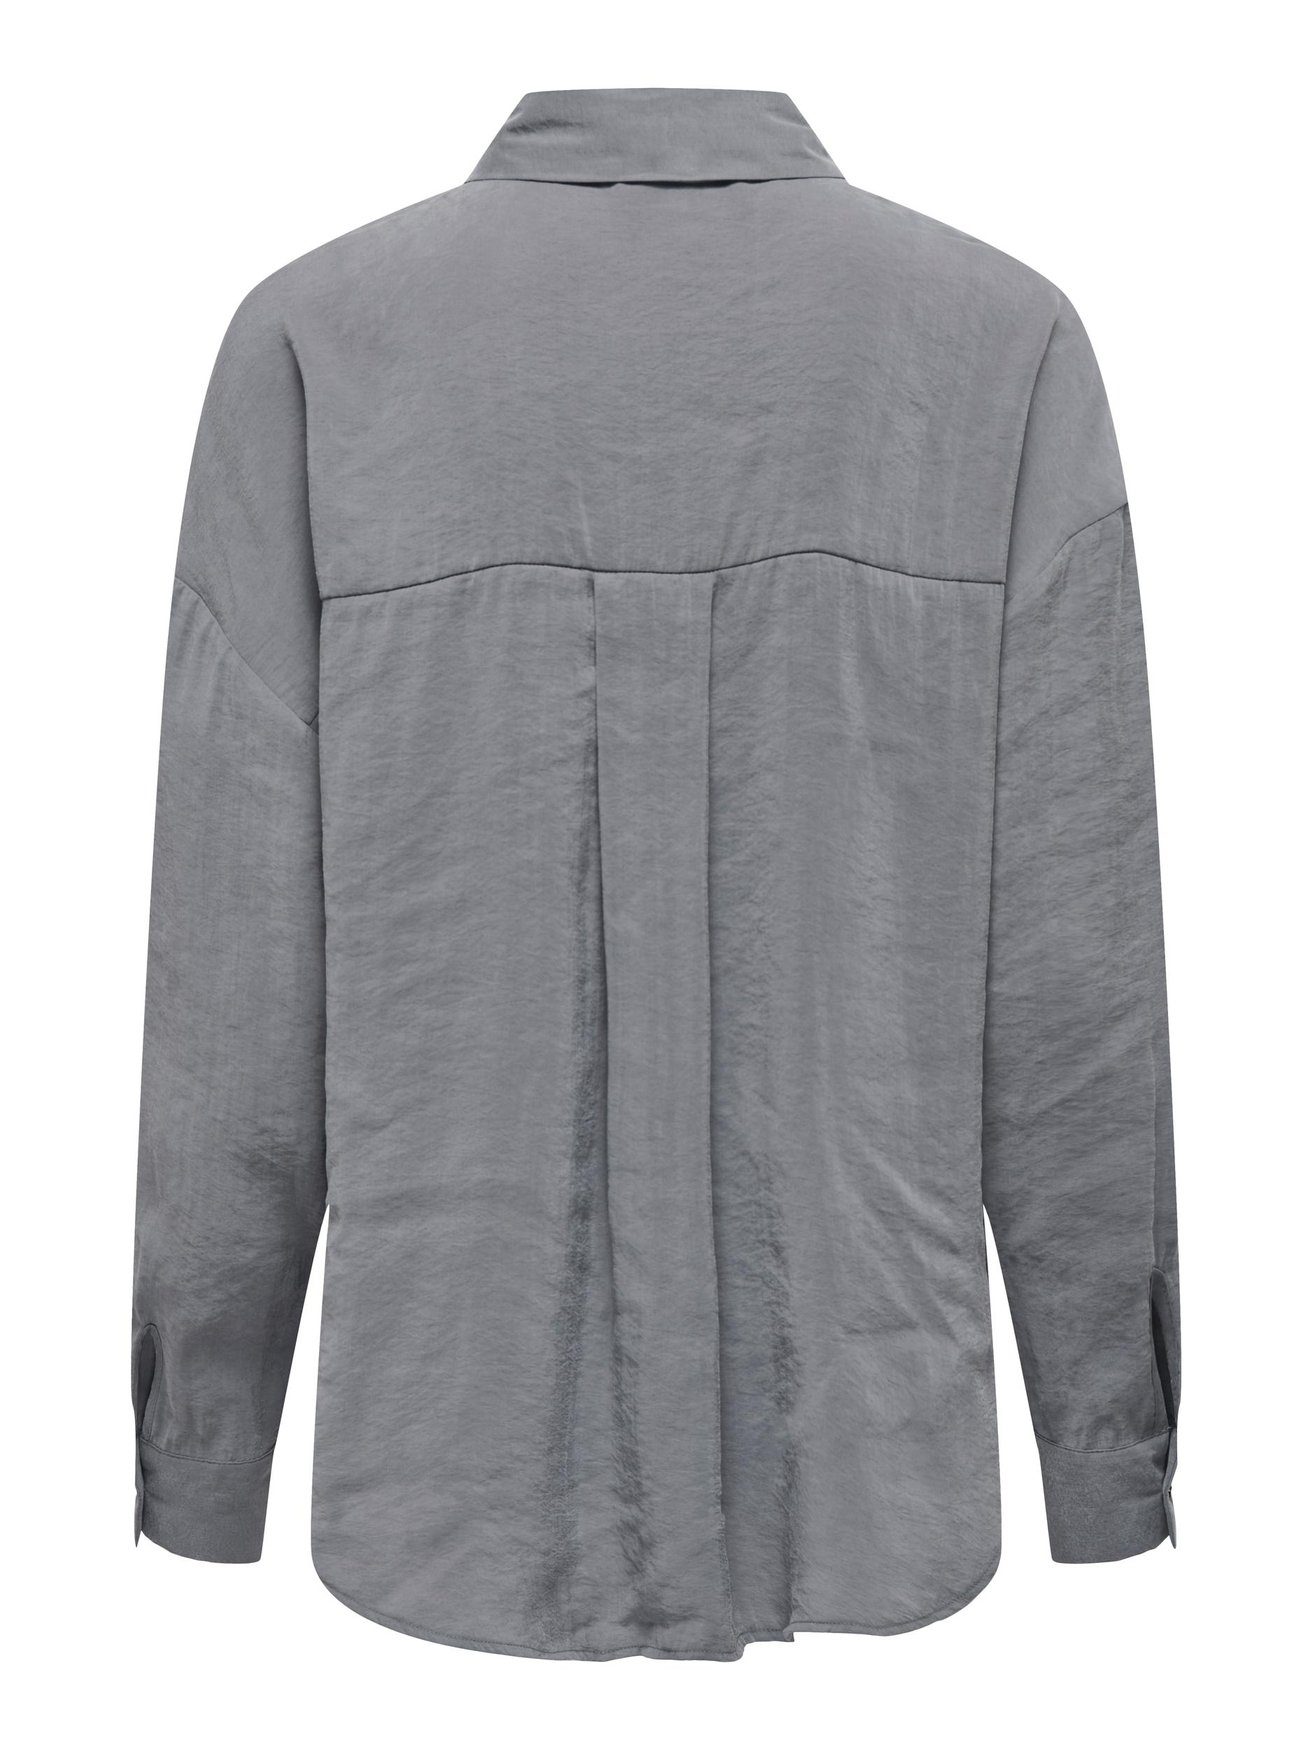 Bluse Hemd Grau Shirt Oversize ONLY Weites 5635 Langarm in Blusenshirt ONLIRIS